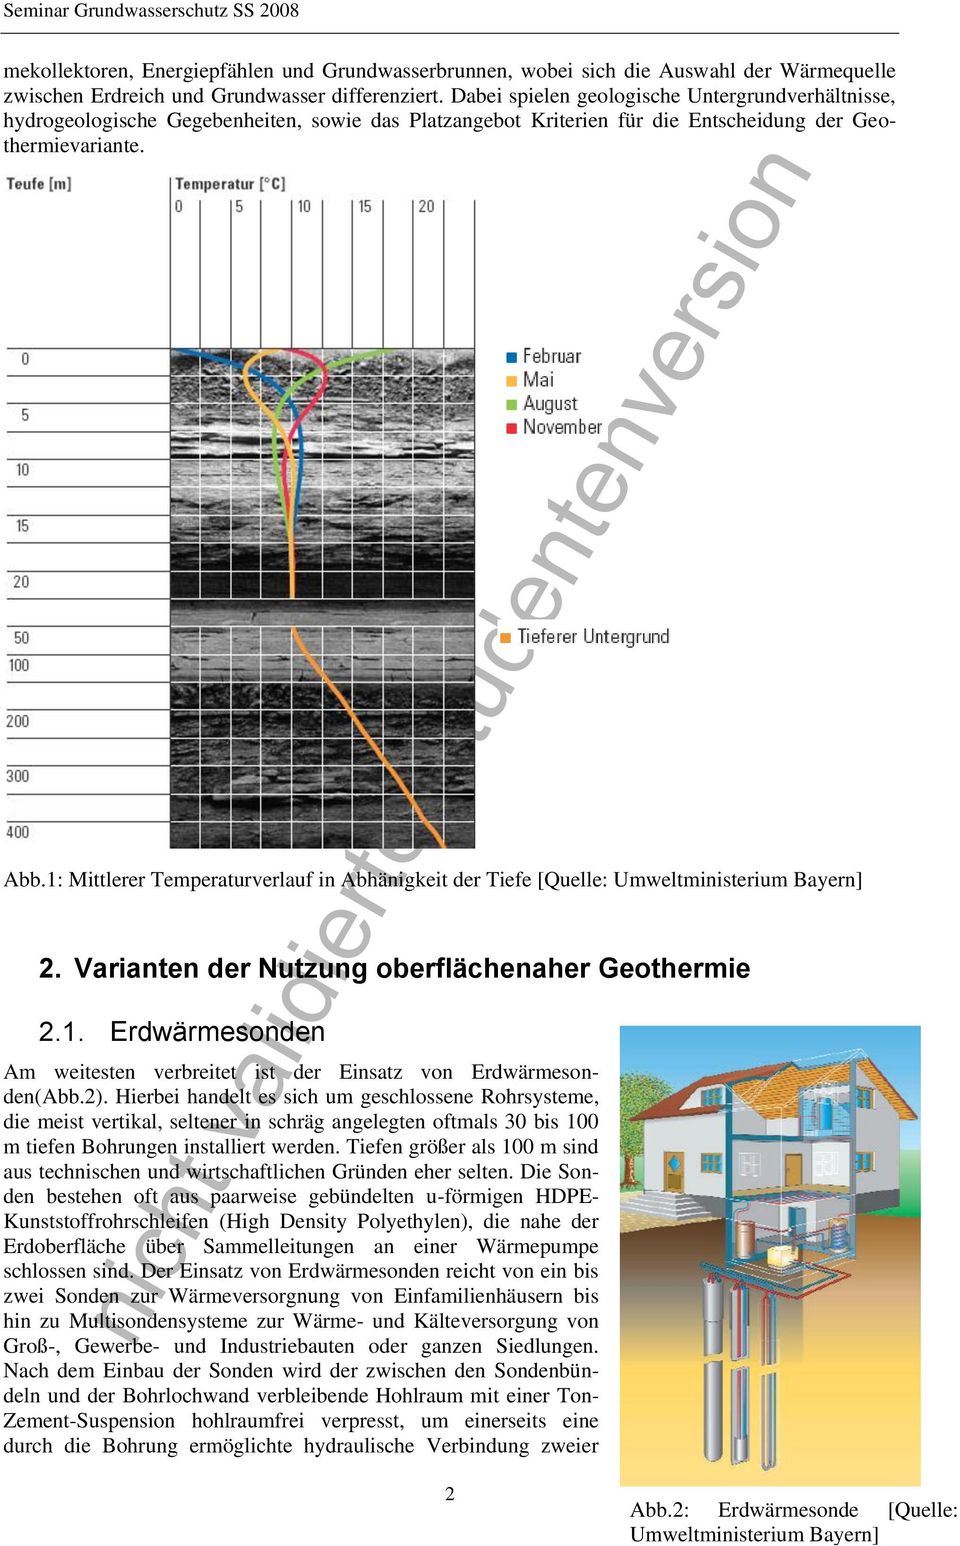 1: Mittlerer Temperaturverlauf in Abhänigkeit der Tiefe [Quelle: Umweltministerium Bayern] 2. Varianten der Nutzung oberflächenaher Geothermie 2.1. Erdwärmesonden Am weitesten verbreitet ist der Einsatz von Erdwärmesonden(Abb.